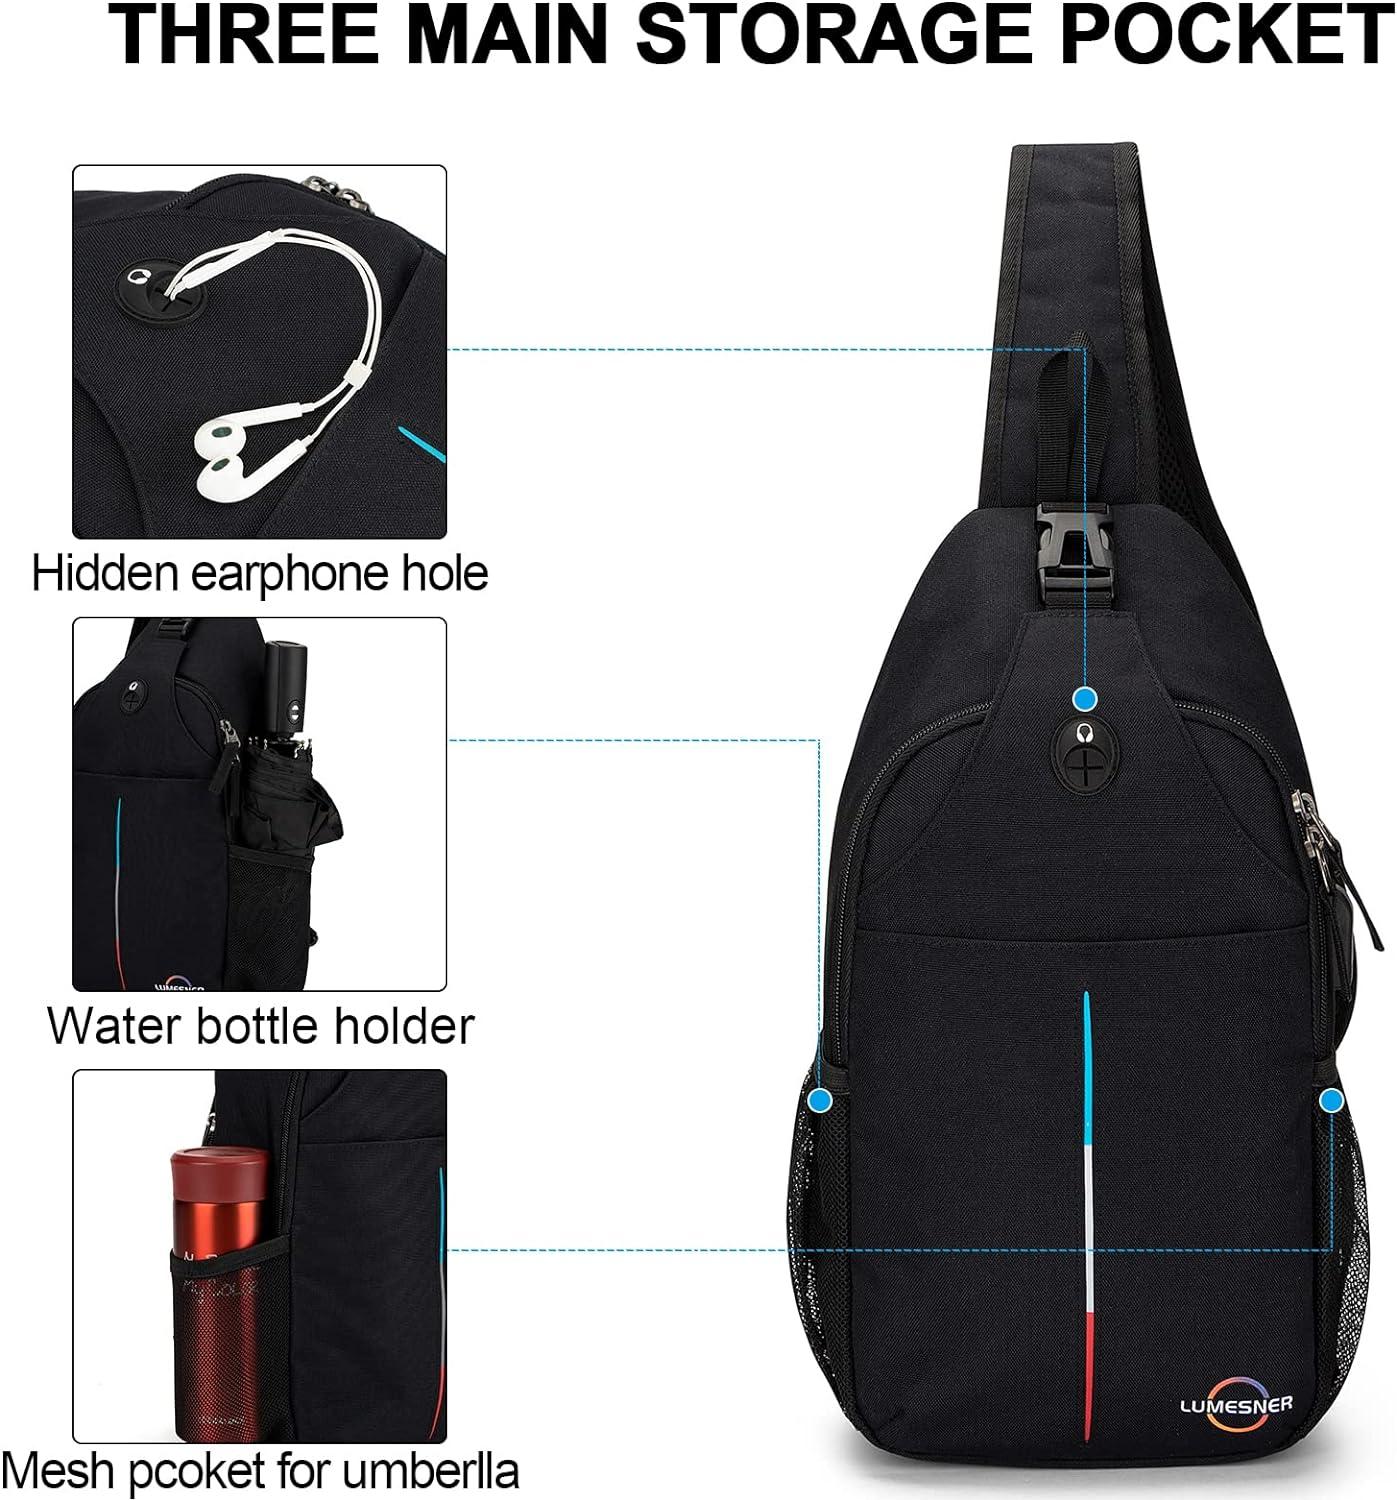 Men Sling Backpack One Shoulder Crossbody Bag Student School Work Travel  Hiking